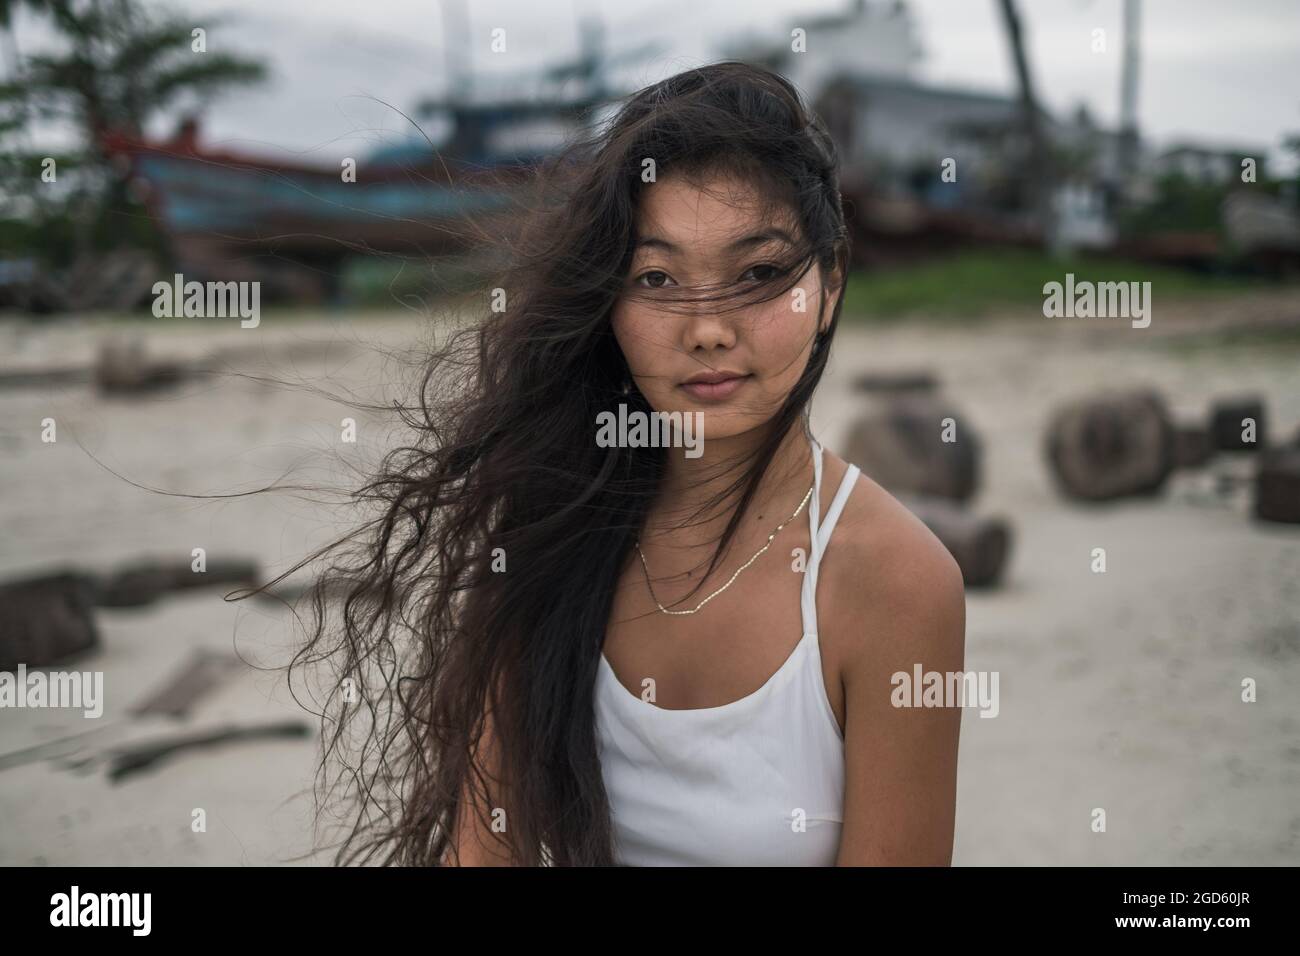 Charmante jeune femme asiatique en robe blanche assise sur la pierre et regardant de côté. Brunette cheveux longs bouclés. Photo romantique. Photo de haute qualité Banque D'Images